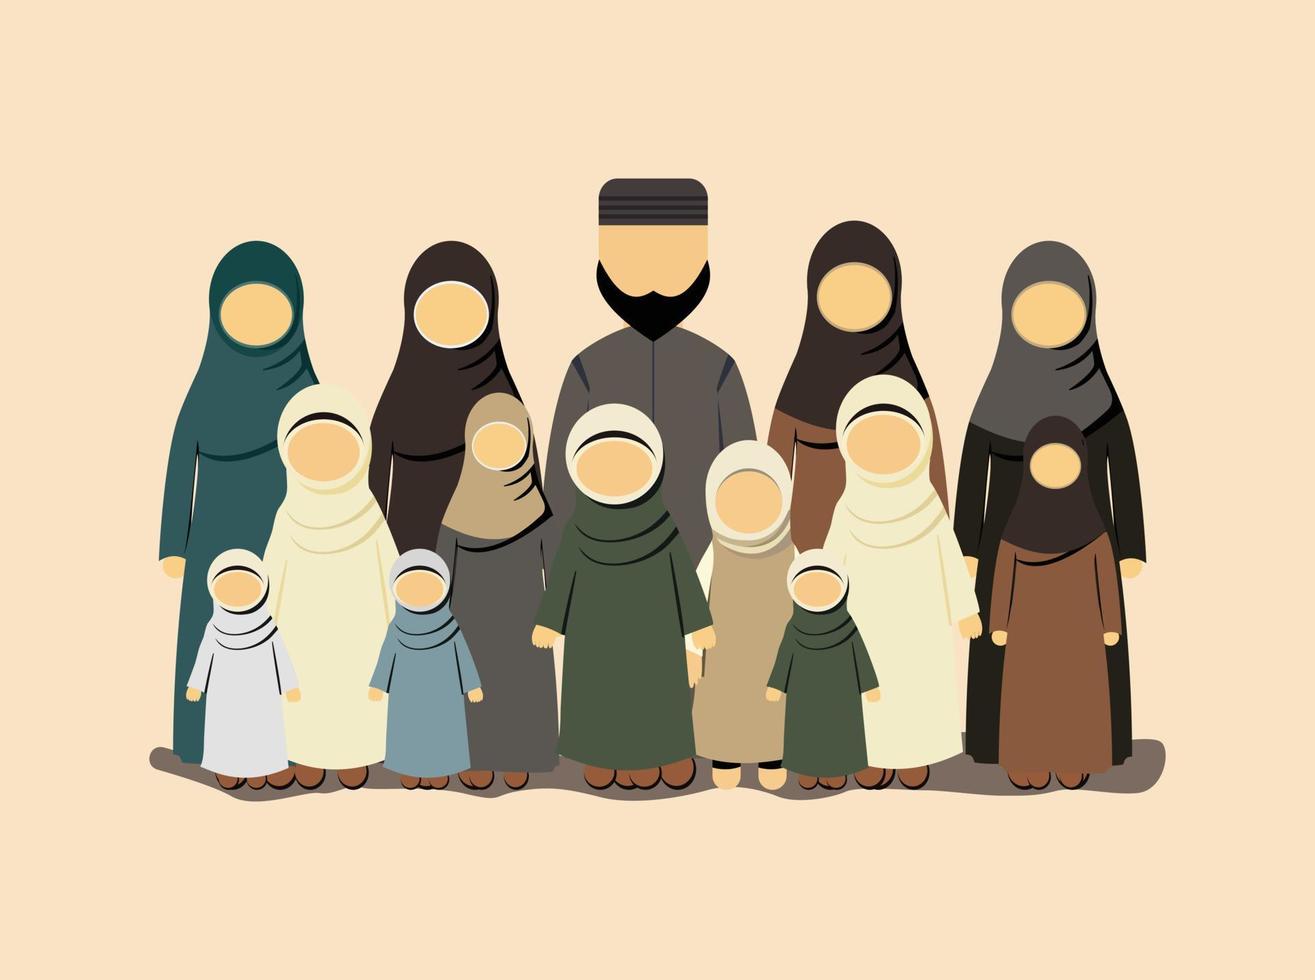 islâmico família abraçando valores, cultura, e tradição - guiado de fé e moral, cultivar Forte títulos e Apoio, suporte para cada de outros vetor